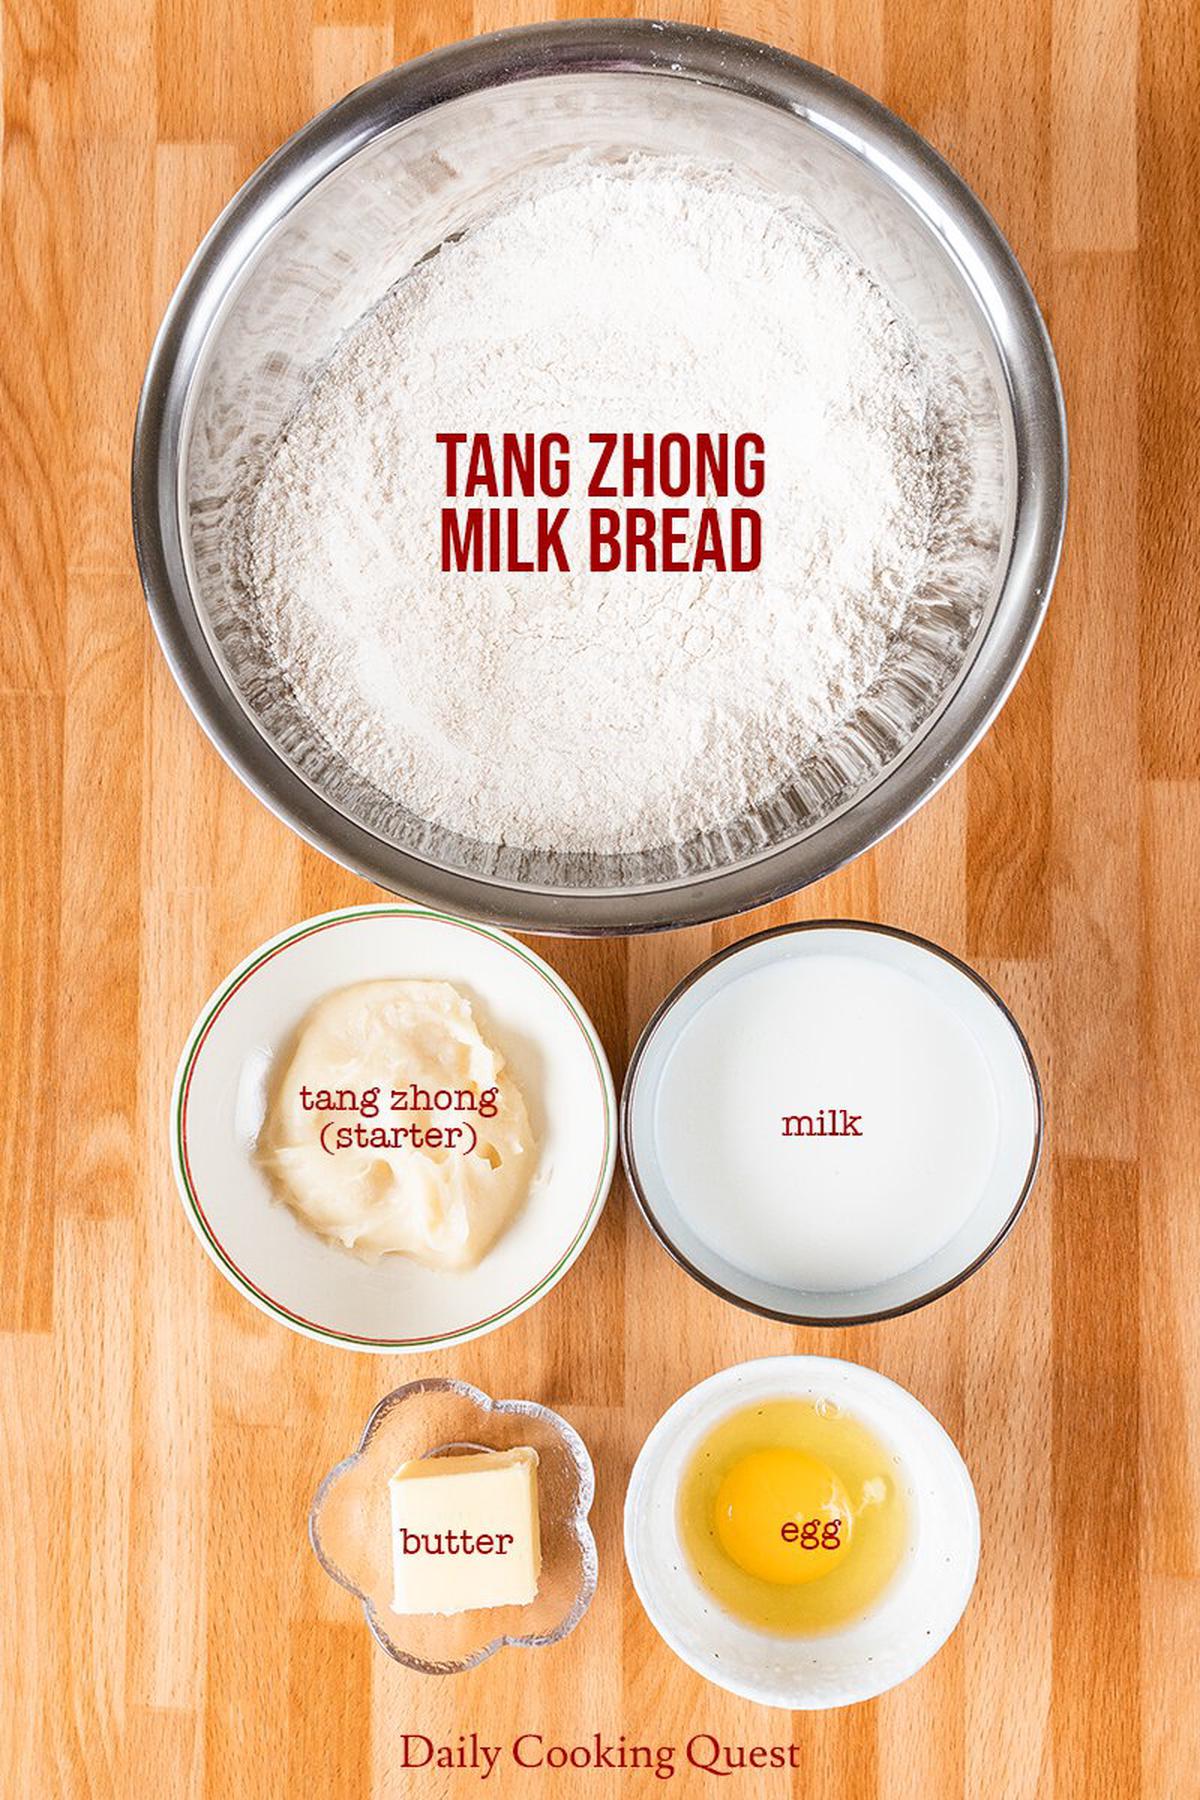 Ingredients to prepare tang zhong milk bread.